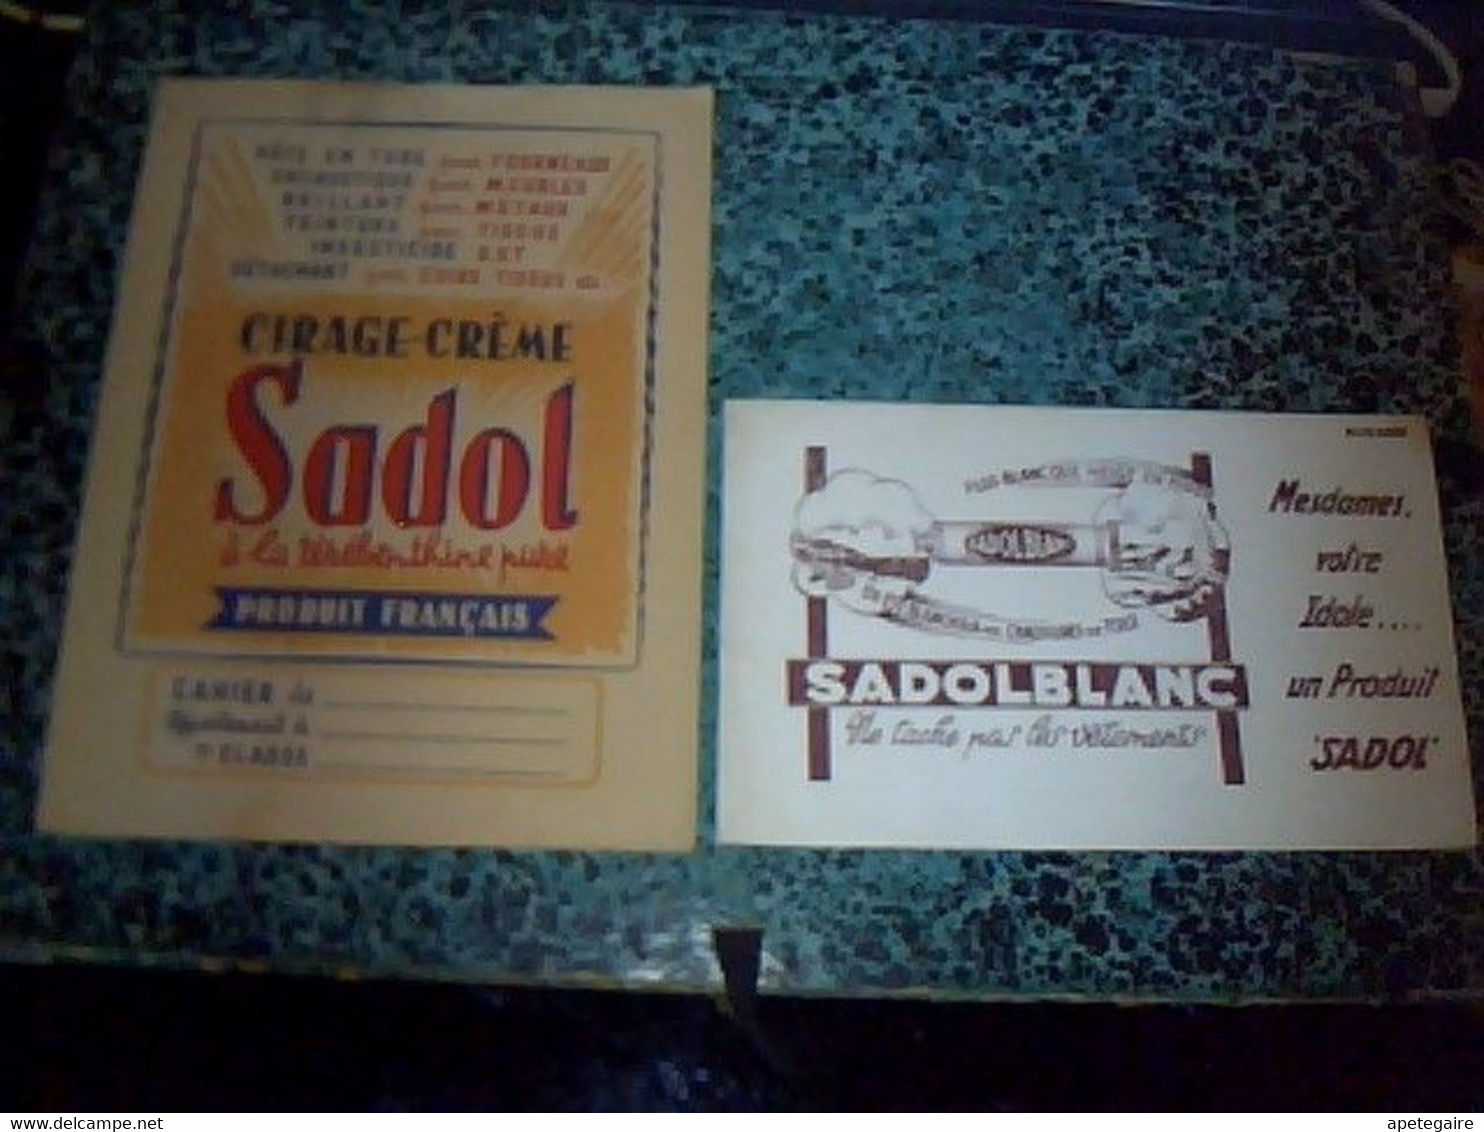 Vieux Papier Produit Sadol  Protège Cahier Cirage - Créme  Sadol à La Térébenthine & Buvard Sadolblanc Cirage - S